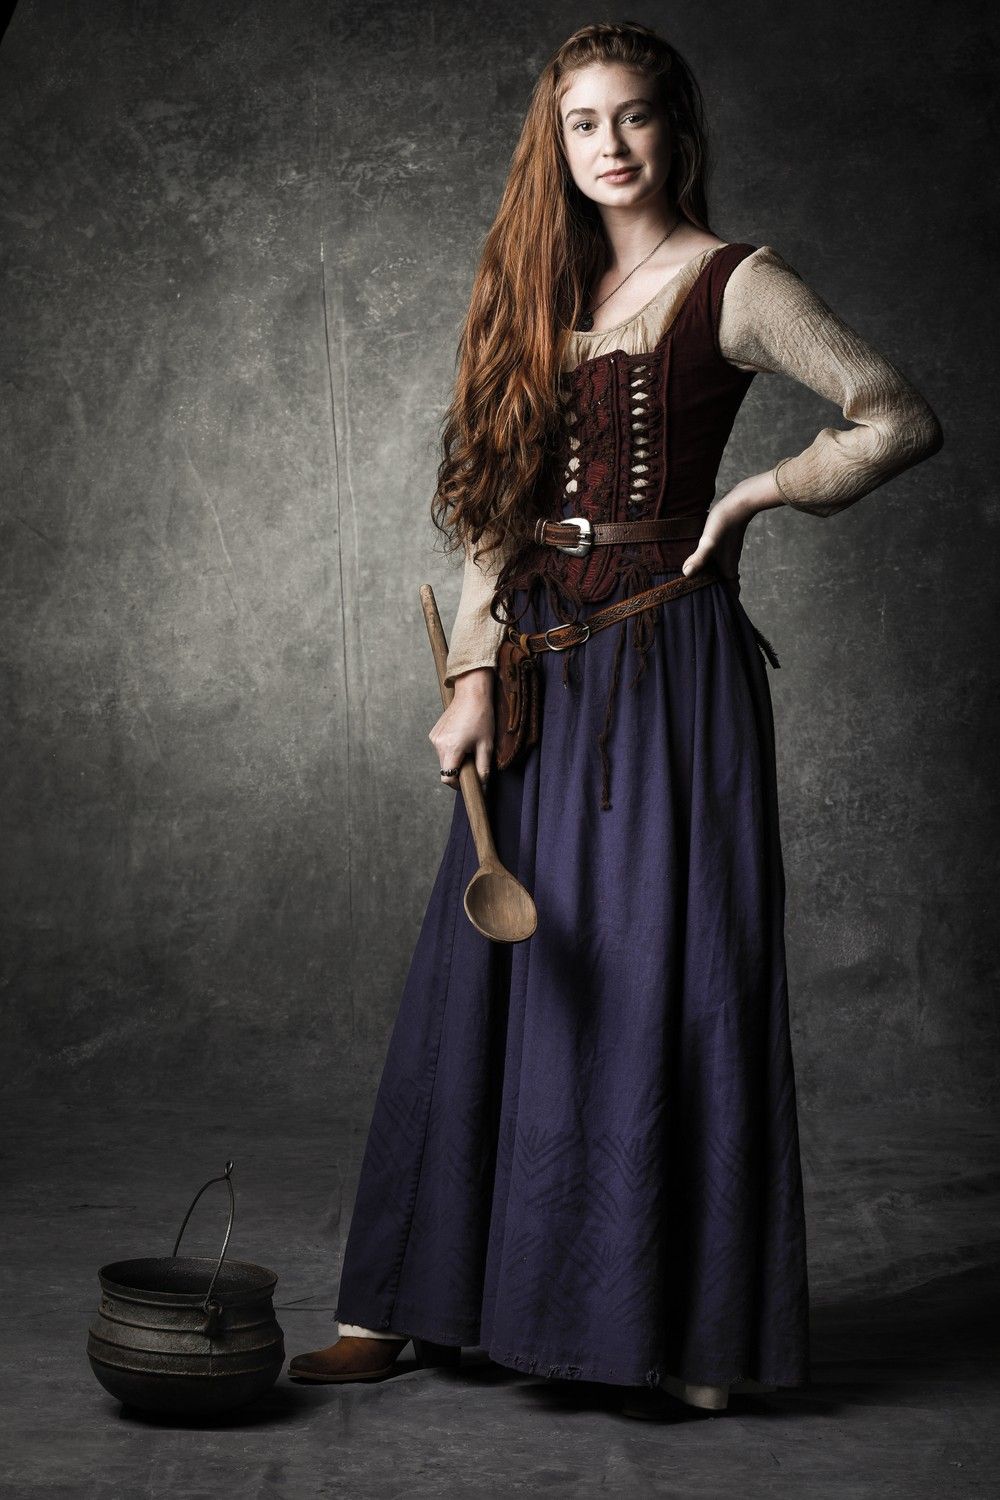 déguisement Halloween femme esprit médiéval idée originale longue robe bleue marine corset